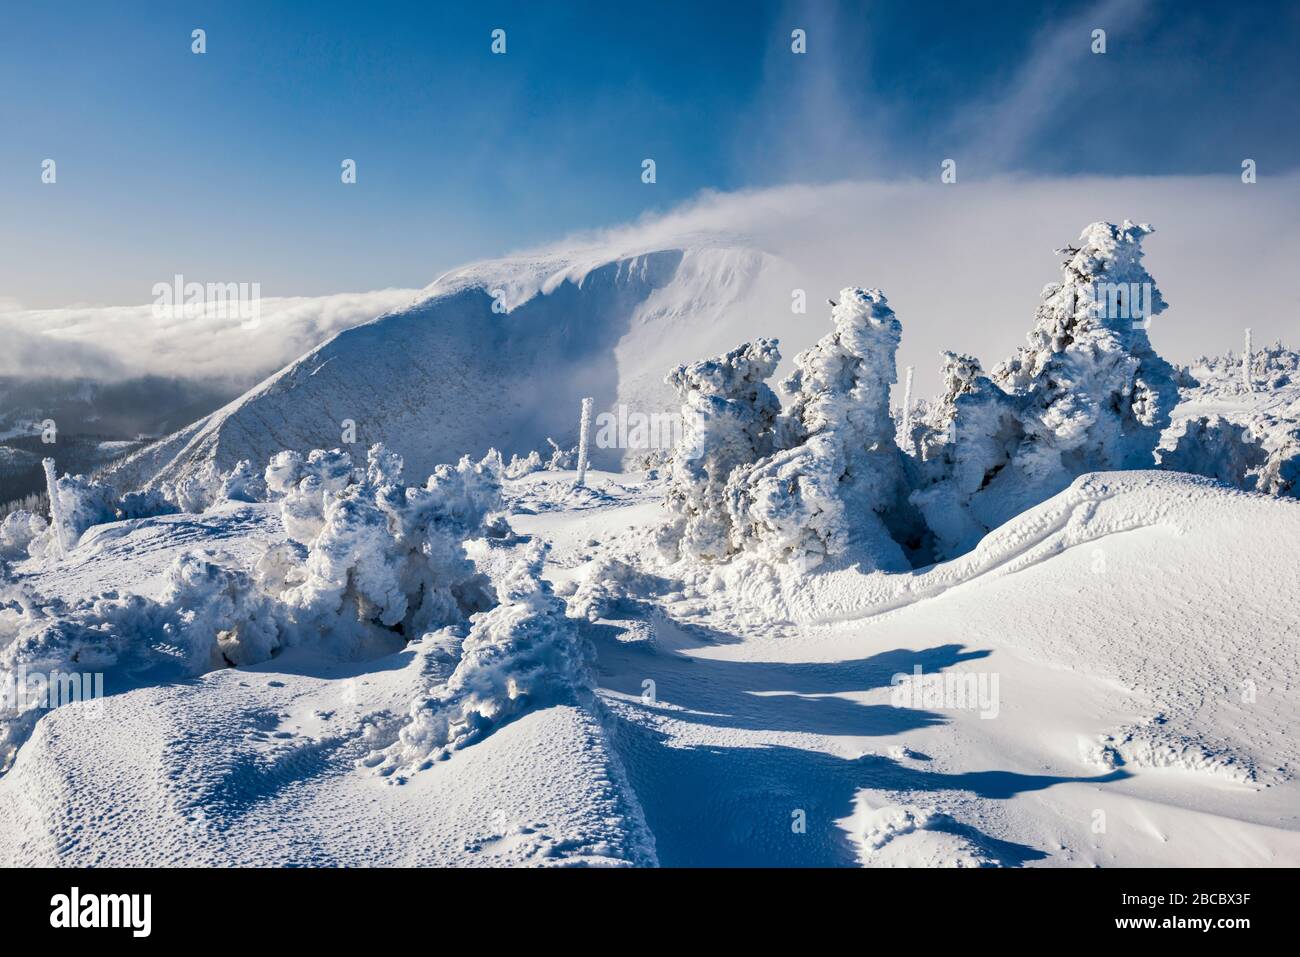 Árboles, hielo y nieve encerados, nubes de foehn en la distancia, meseta subalpina en la línea de la madera, Parque Nacional Karkonosze, Baja Silesia, Polonia Foto de stock